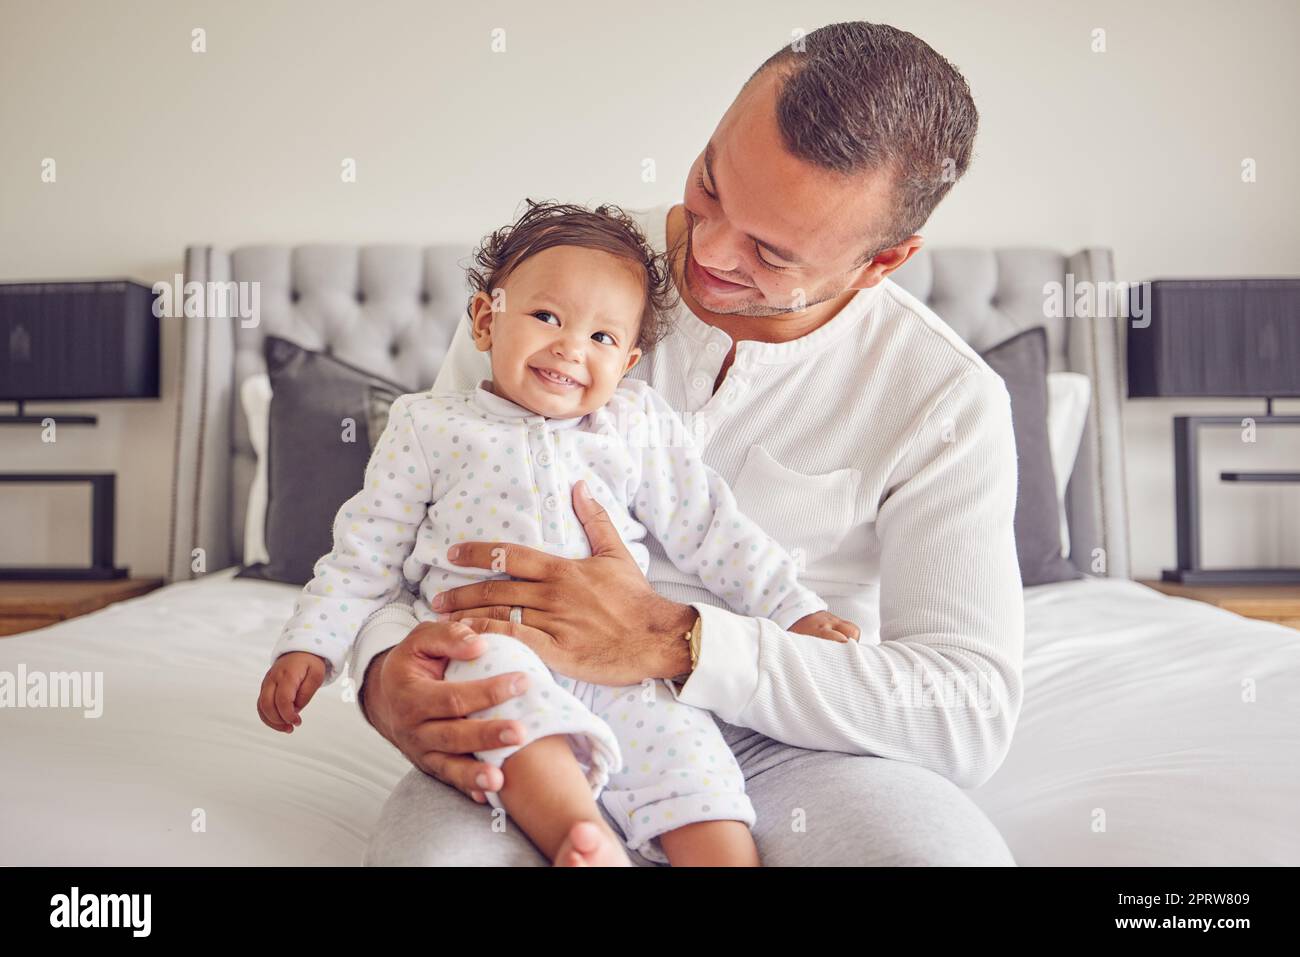 Glückliches Baby und Vater entspannen Sie sich in einem Schlafzimmerporträt für Liebe, Unterstützung und Kinderbetreuung. Aufgeregt, Glück des Vaters hält neugeborenes Mädchen, Kind oder Kind zusammen für eine gesunde Wachstumsentwicklung Stockfoto